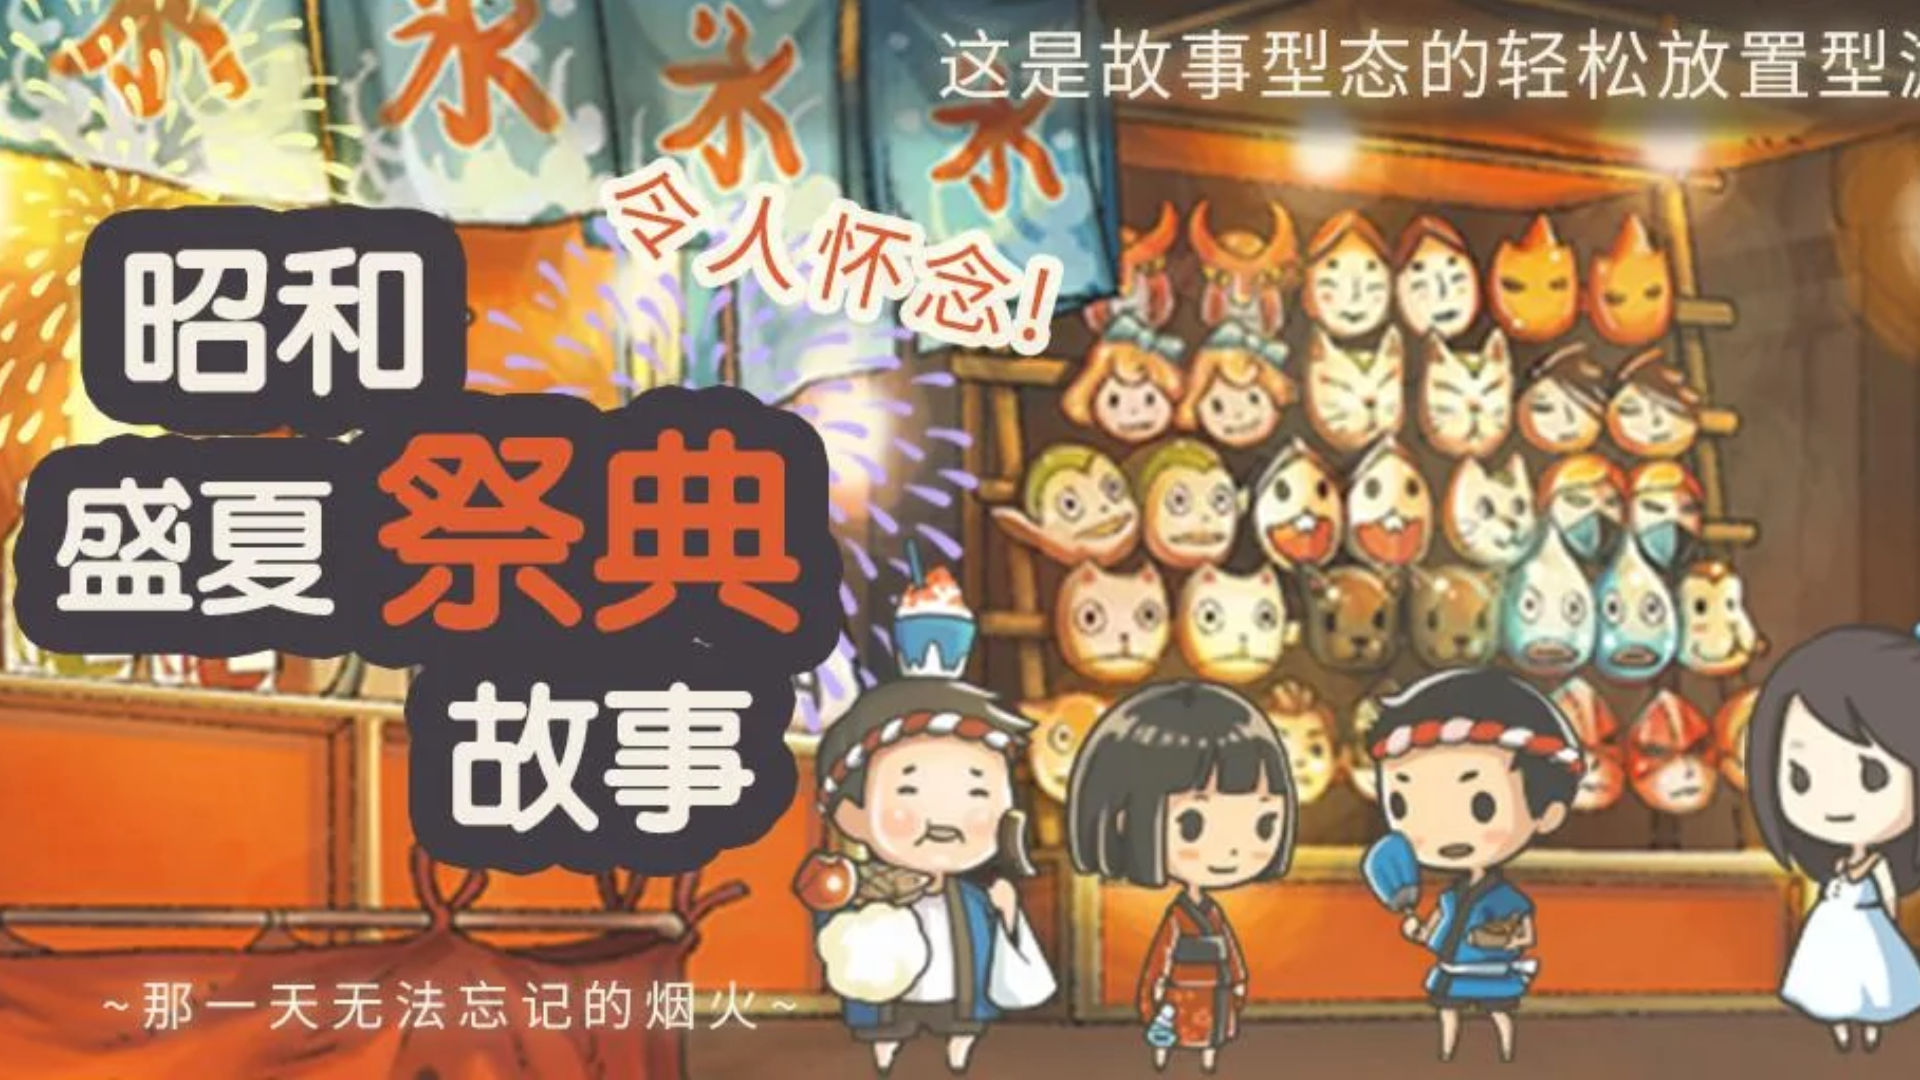 Banner of Kisah Festival Pertengahan Musim Panas Showa～Kembang Api yang Tak Terlupakan di Hari Itu～ 1.0.3